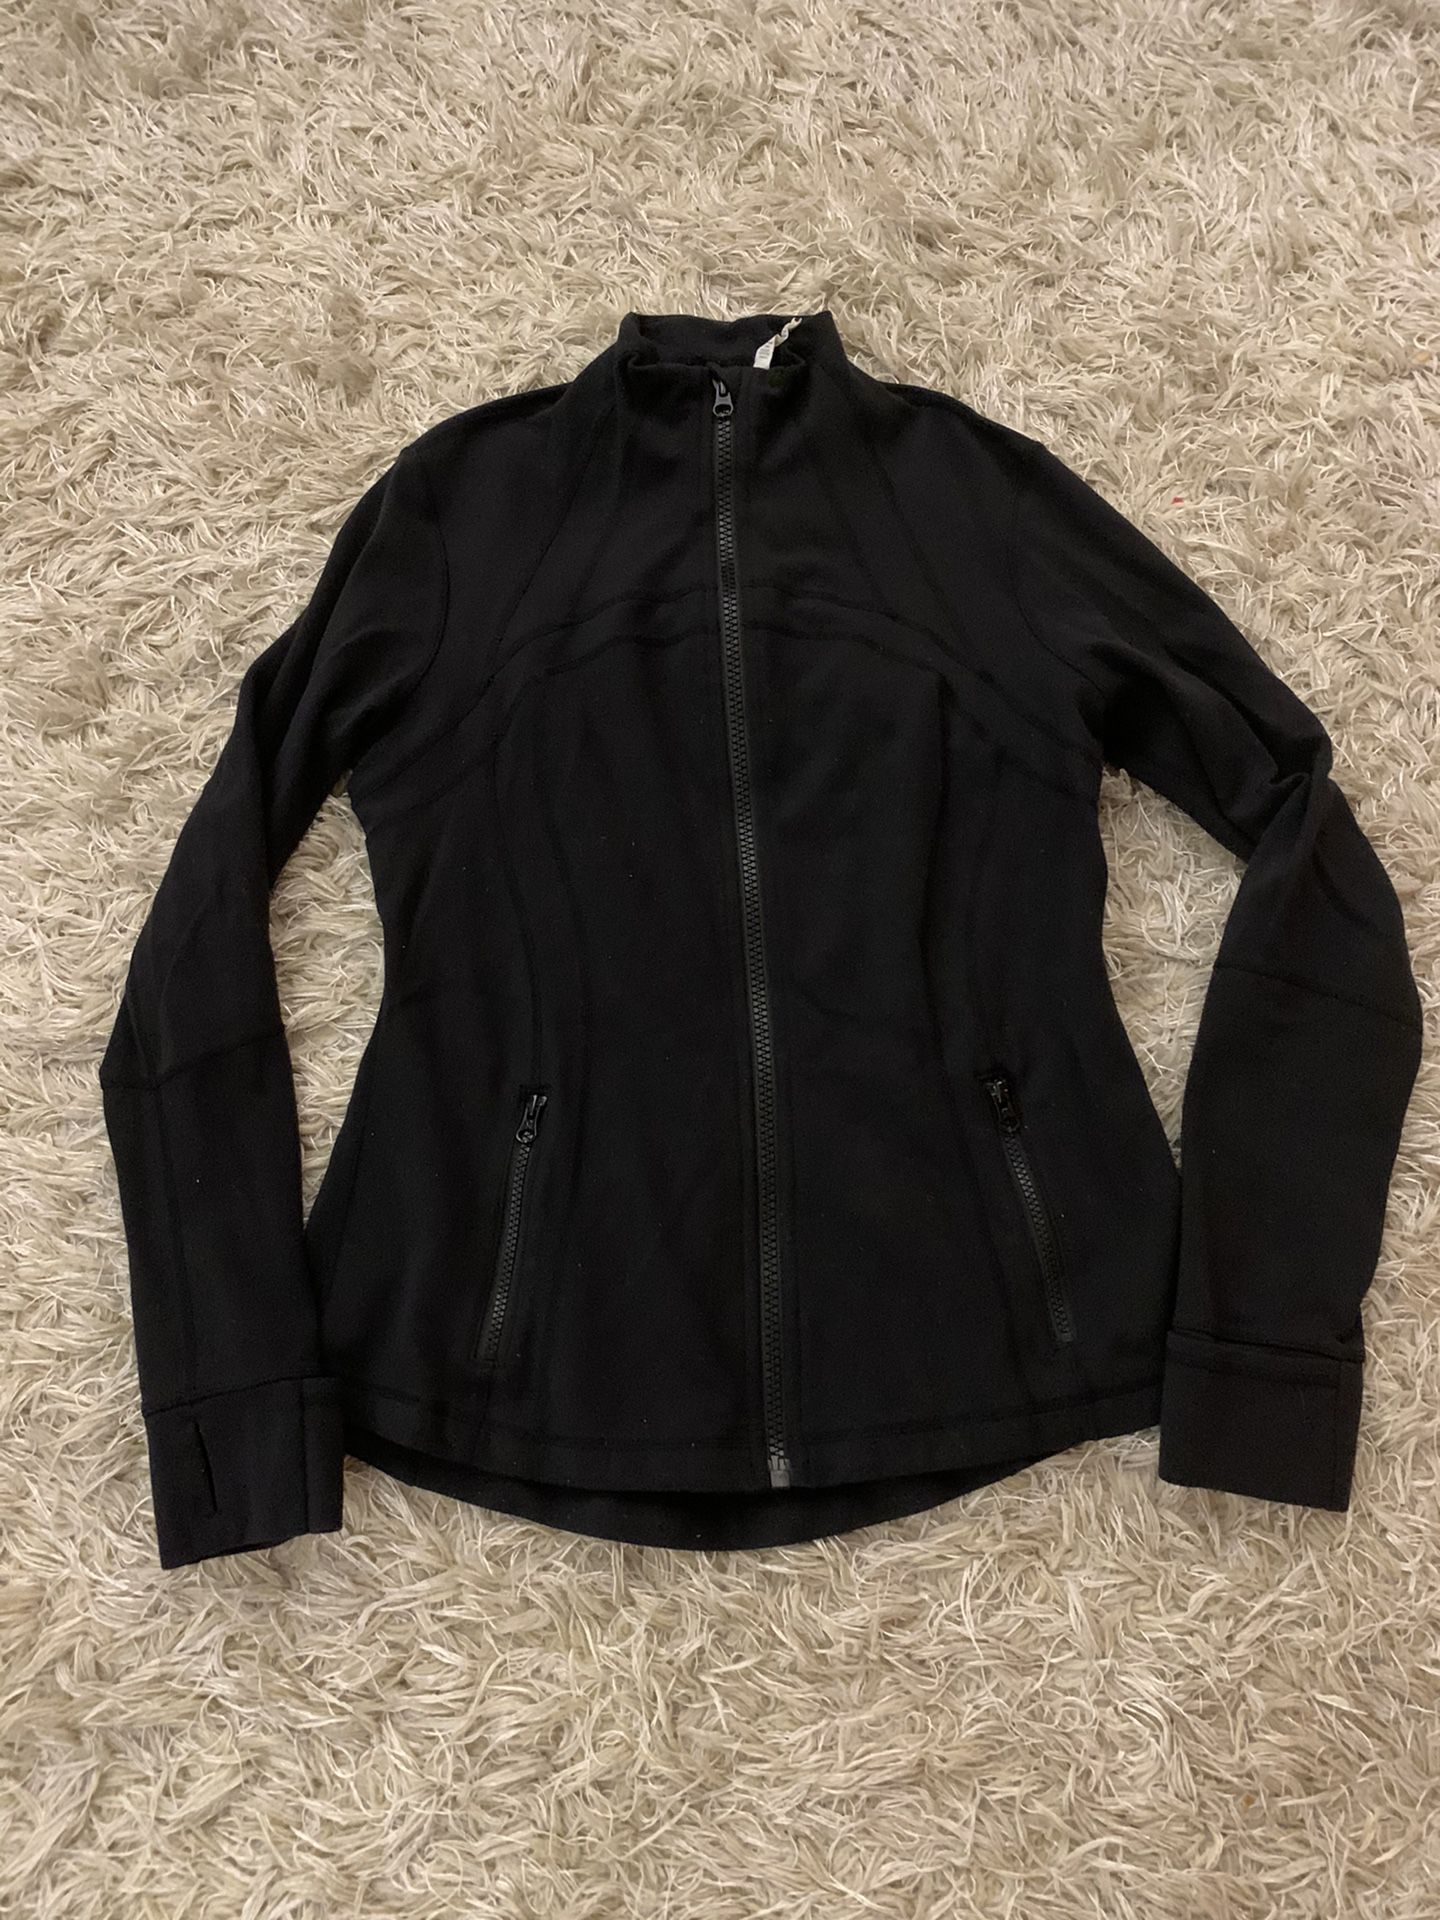 Lululemon Define Black Jacket Size 12